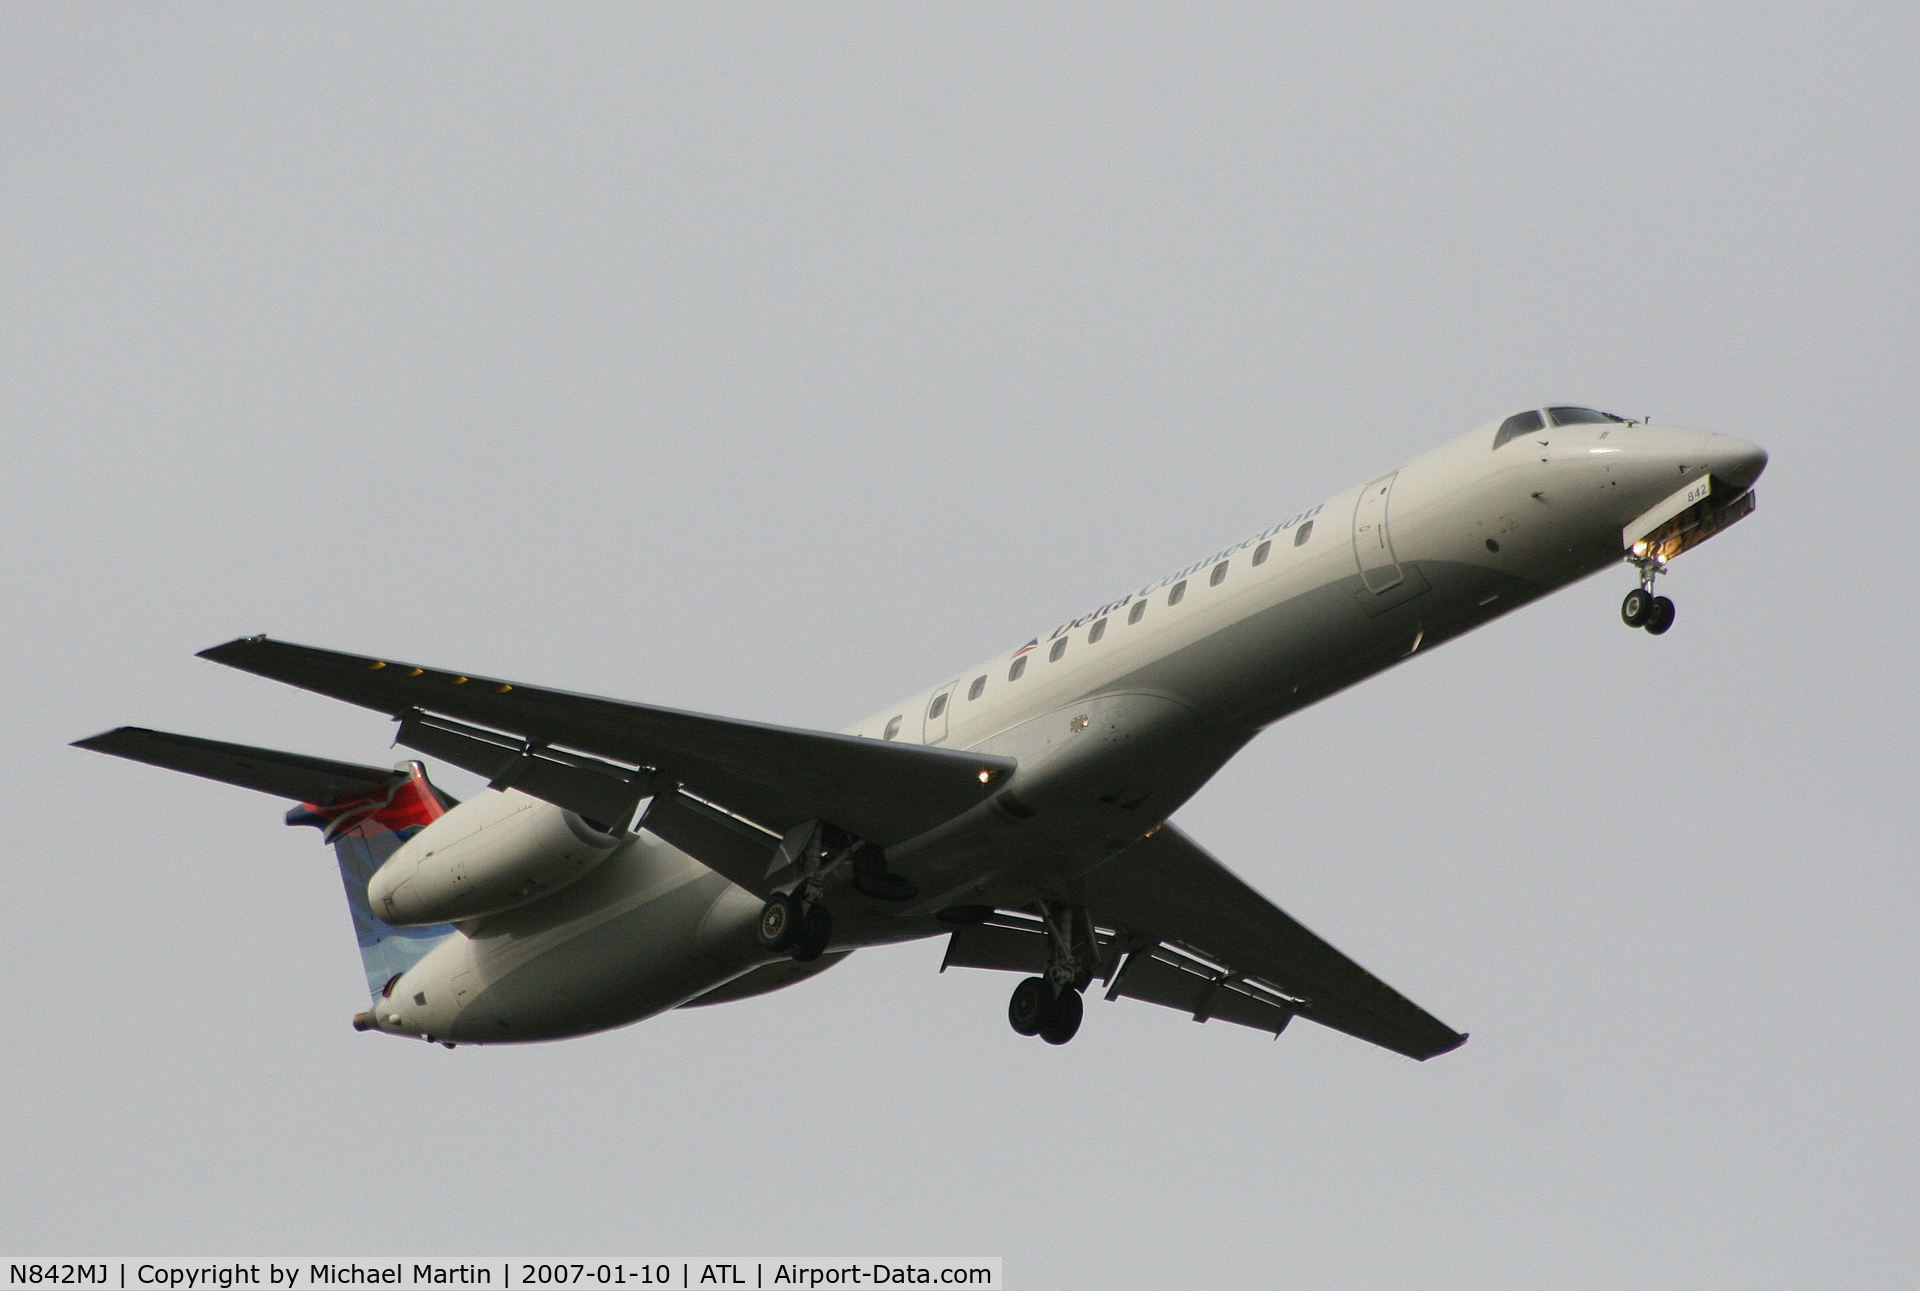 N842MJ, 2001 Embraer EMB-145LR C/N 145457, On final for Runway 9R